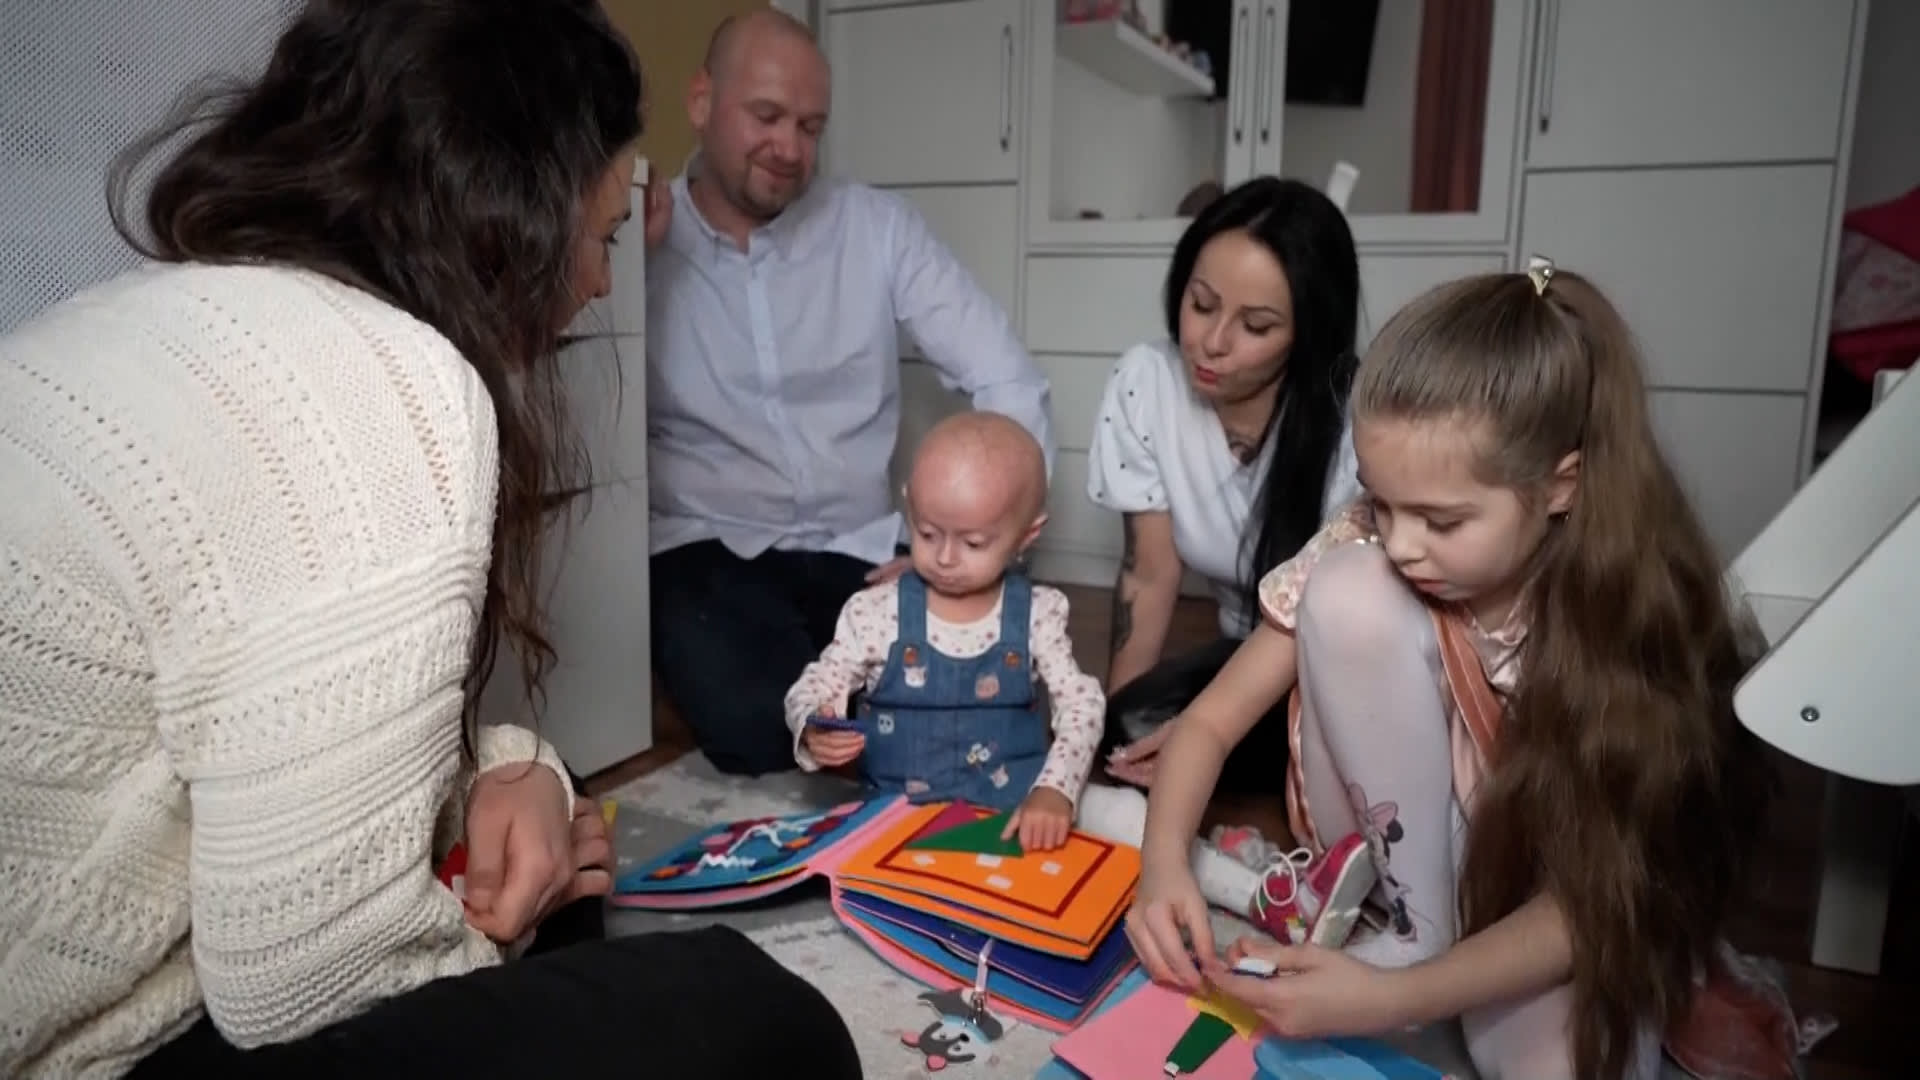 Adélka trpí vzácnou genetickou poruchou zvanou progerie. Zřejmě je jediná v Česku.